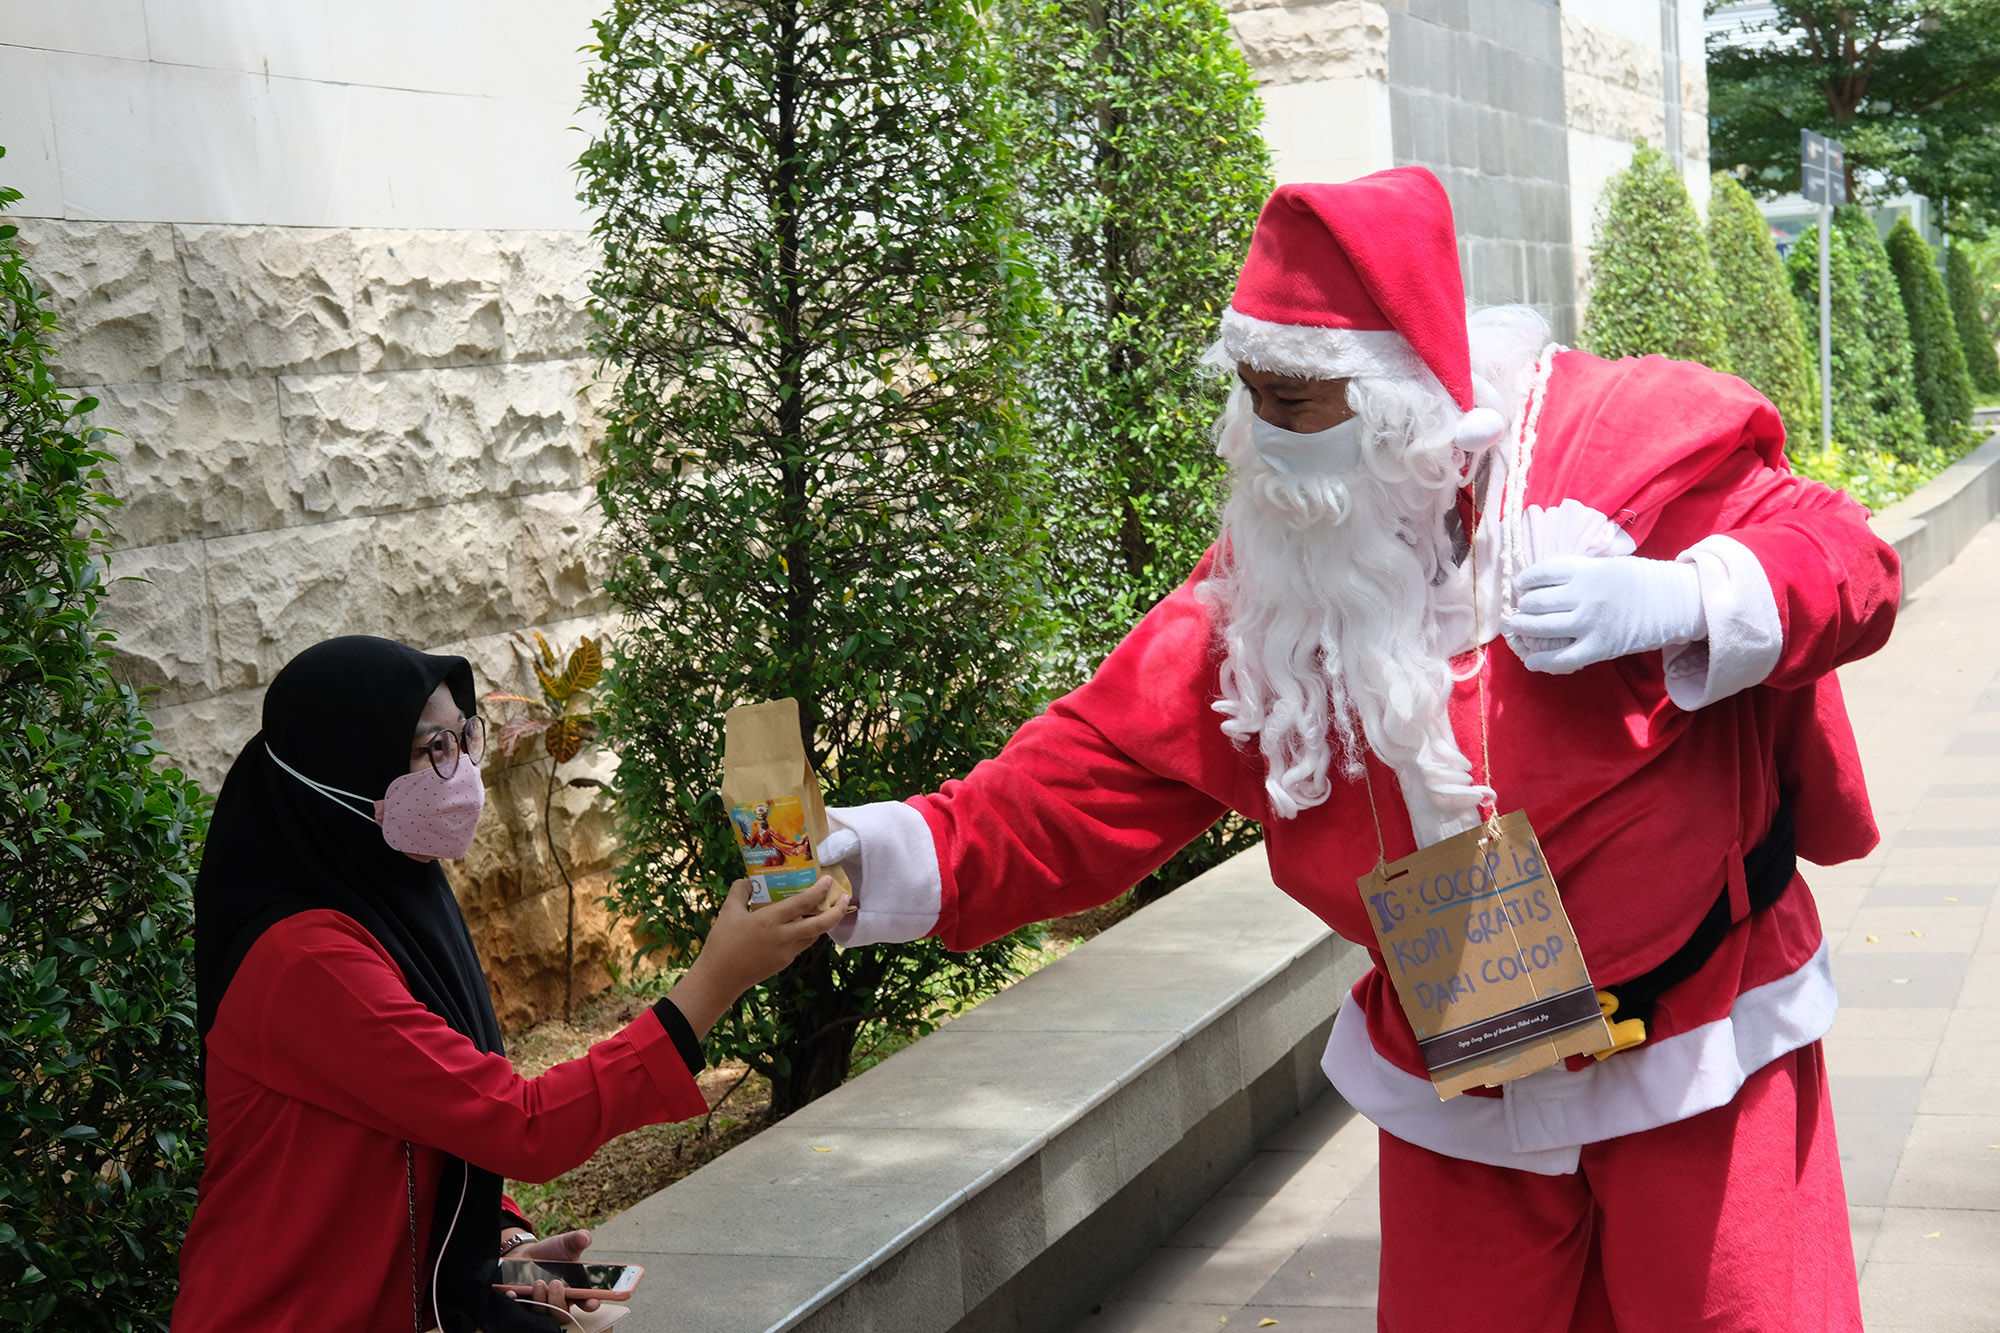 <p>Karyawan dari Cocop.id berkostum Santa Claus membagikan kopi gratis kepada warga, di kawasan Dukuh Atas, Jakarta, Sabtu, 19 Desember 2020. Foto; Ismail Pohan/TrenAsia</p>
